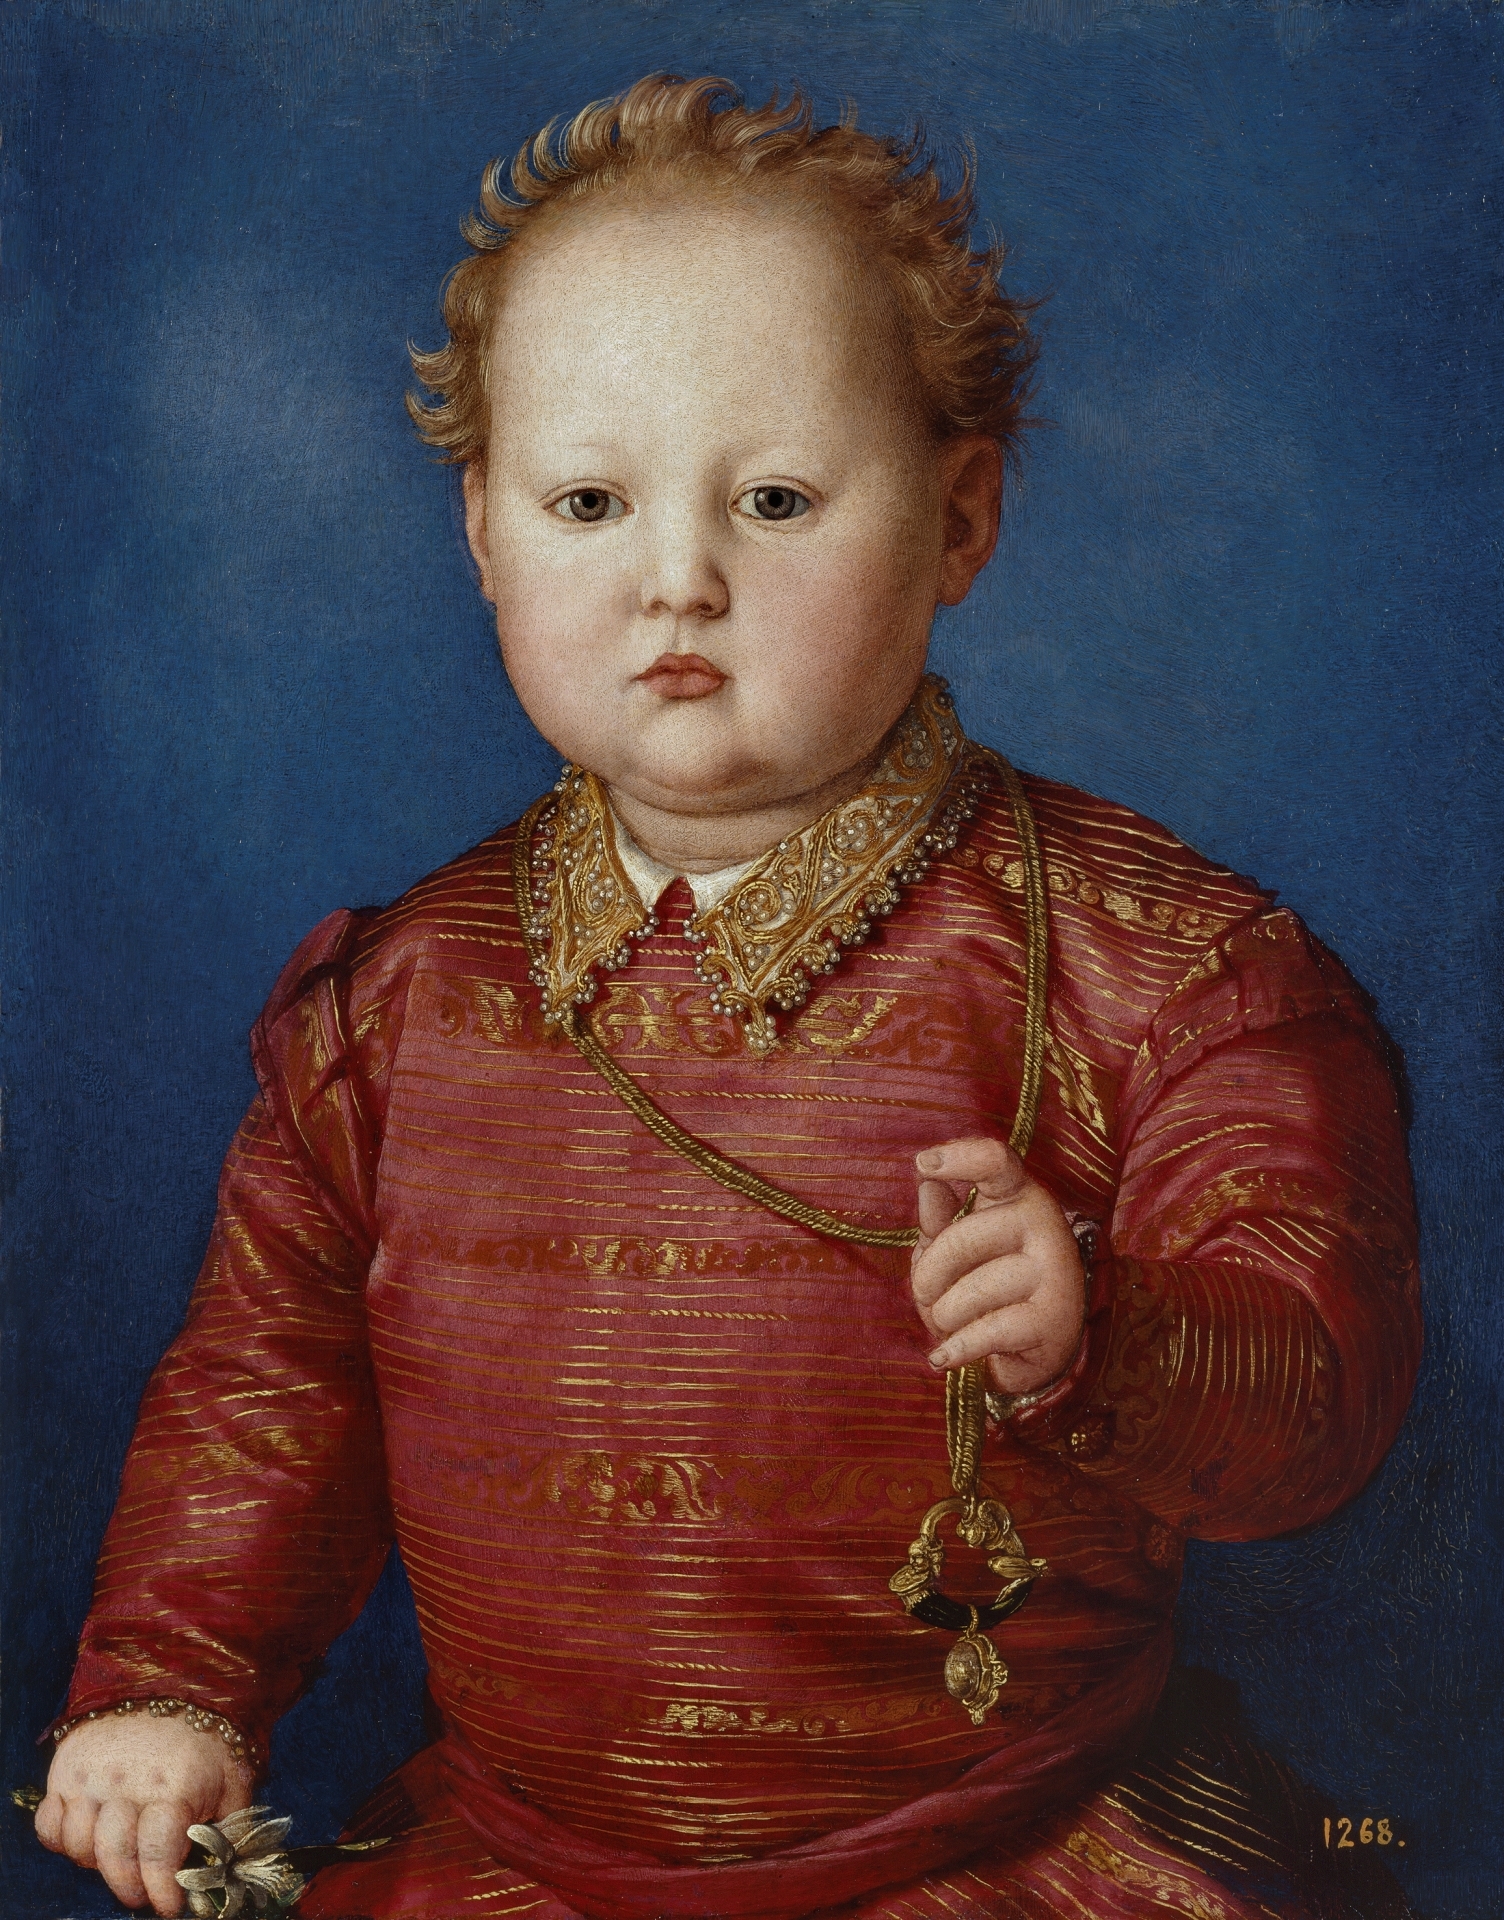 García de'Medici by Agnolo Bronzino - ca. 1550 - 48 x 38 cm Museo del Prado